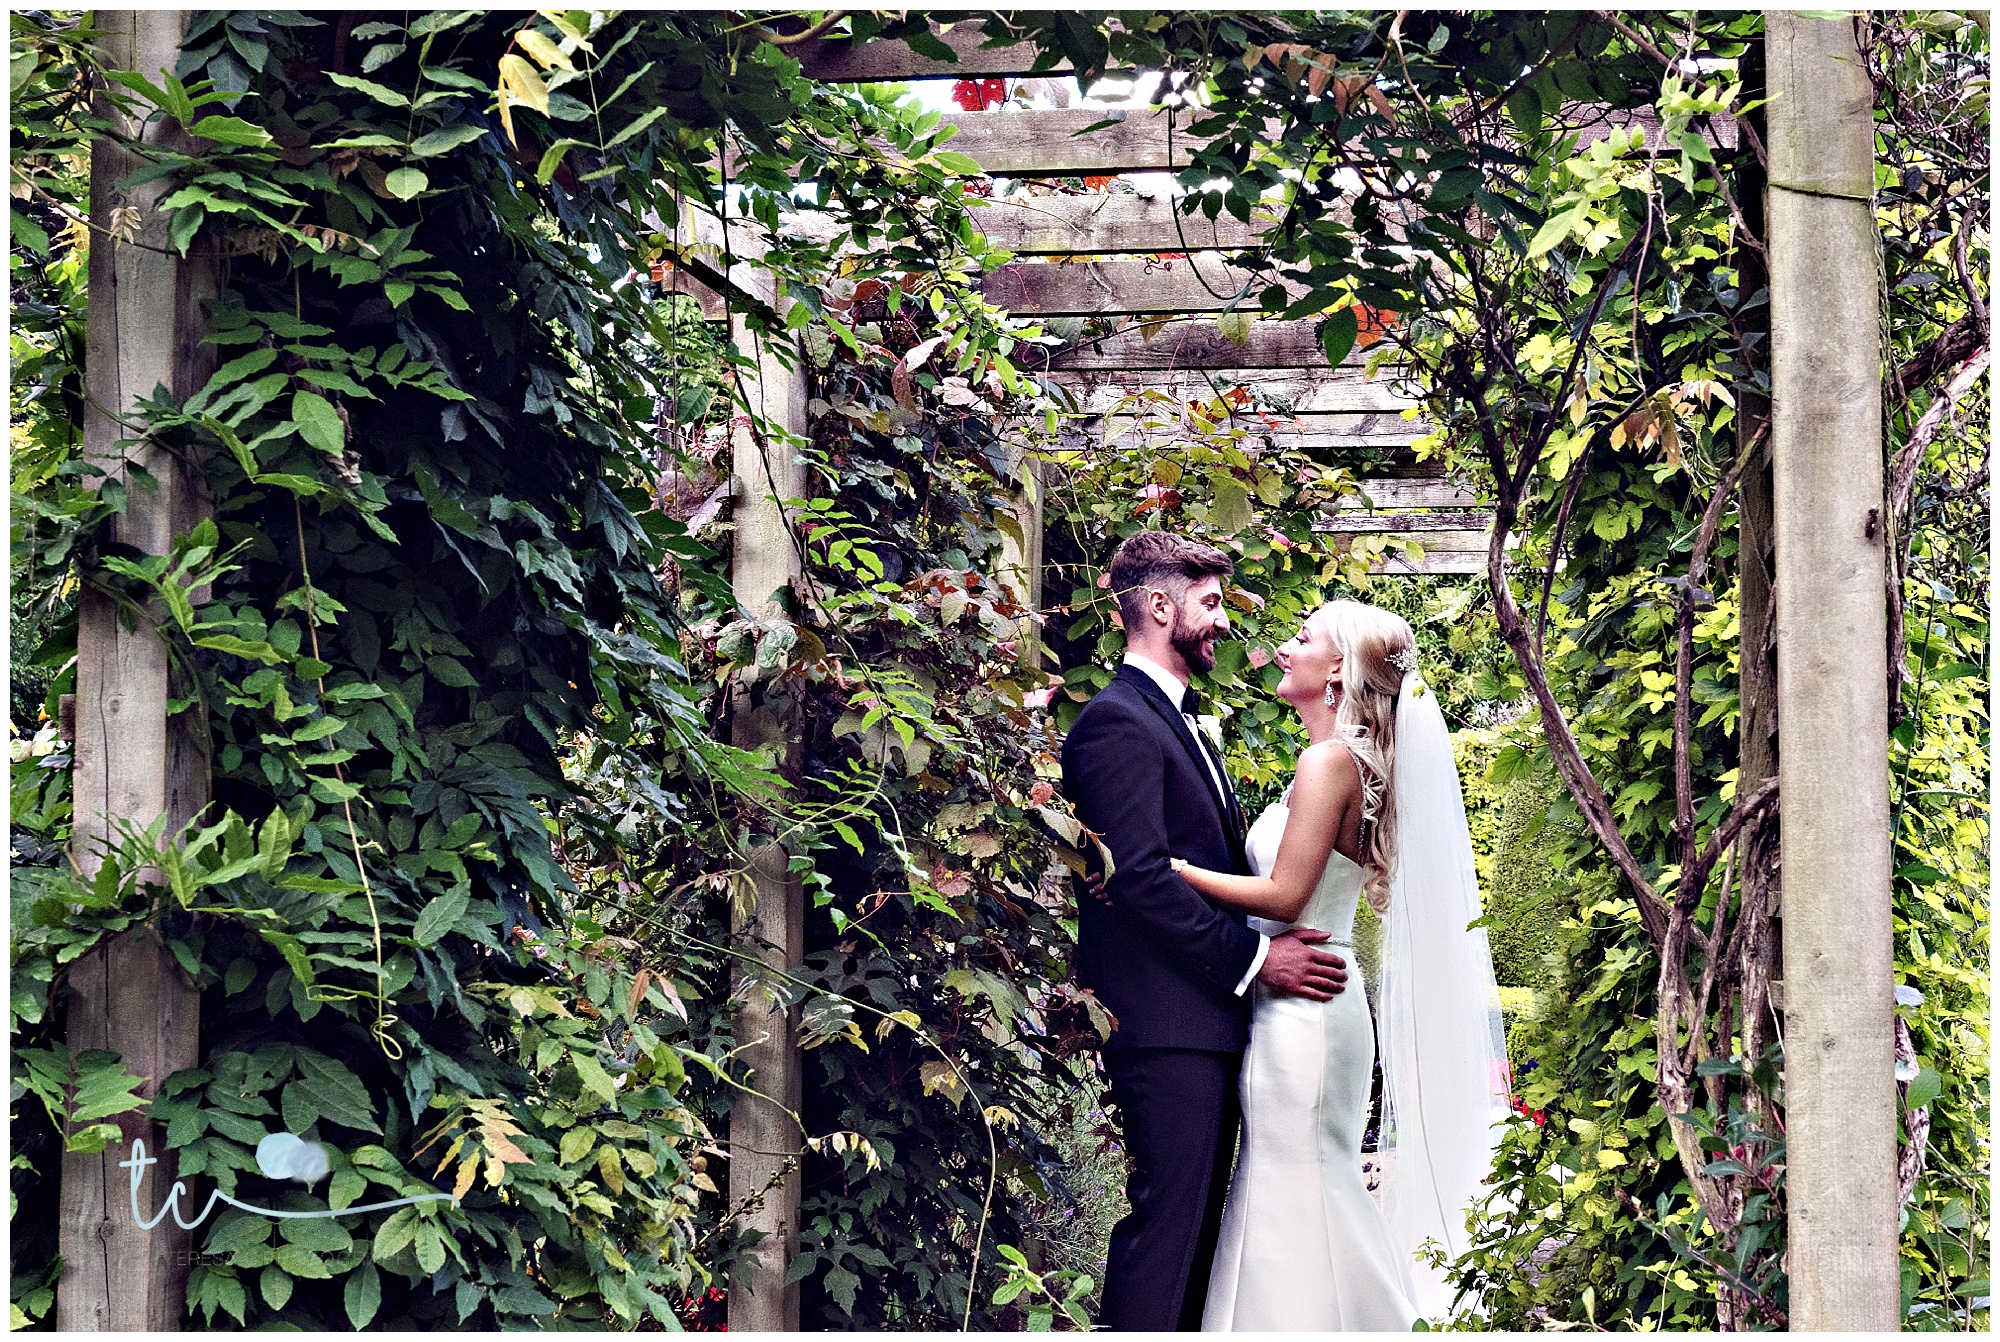 Mottram Hall- Cheshire Wedding Photographer- Weddings at Mottram Hall- Wedding Photographer Cheshire- Northwest Wedding Photographer